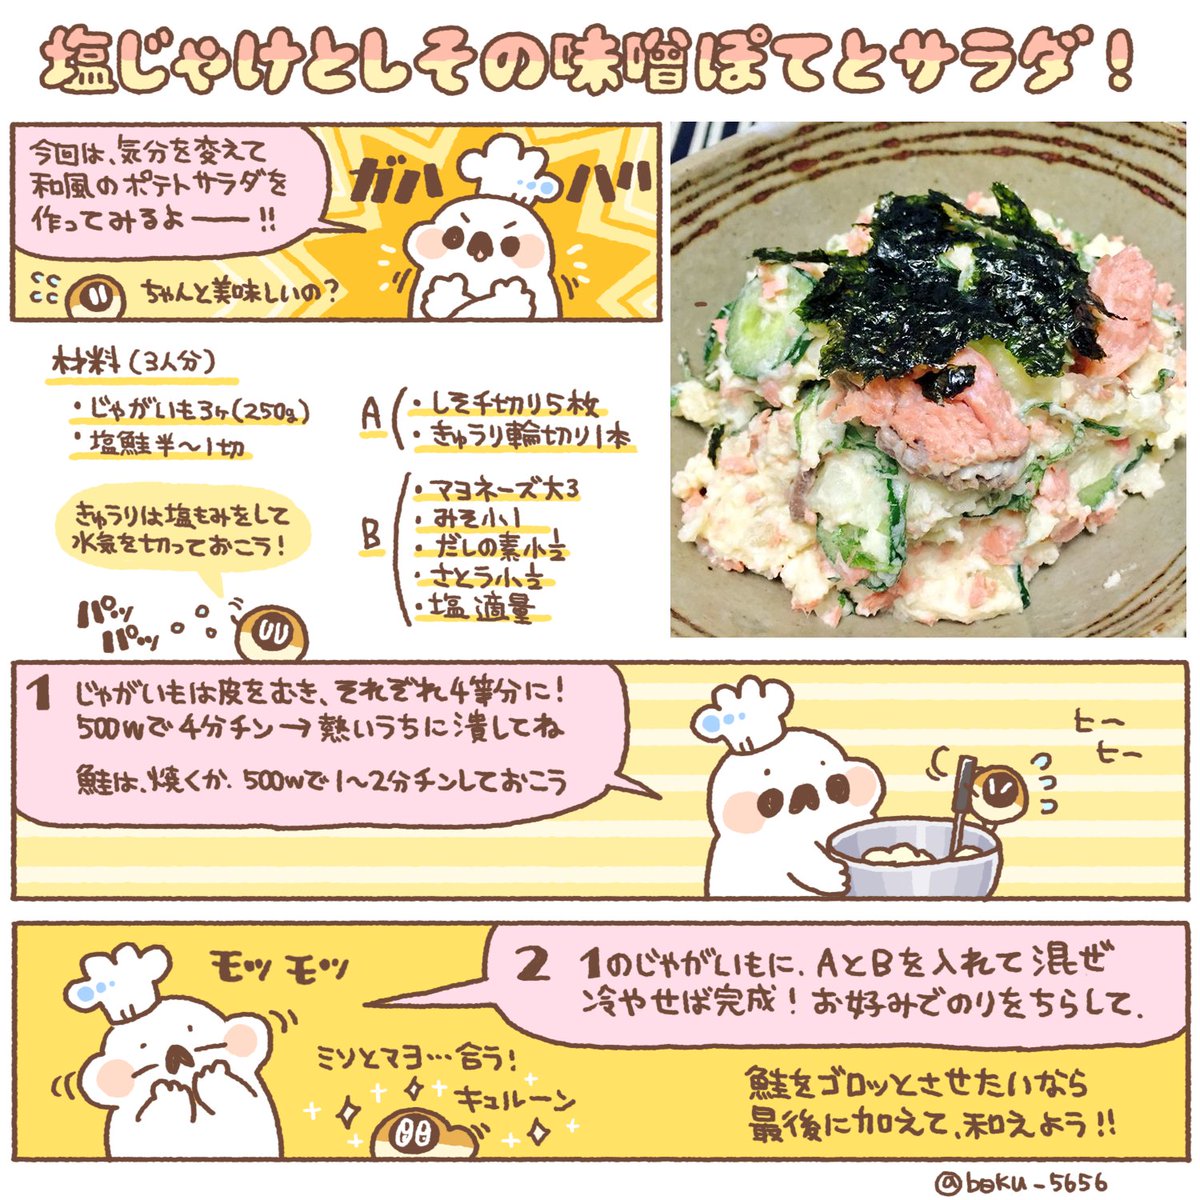 塩鮭と紫蘇の味噌ぽてとサラダのレシピをまとめましたι( OO )/ 